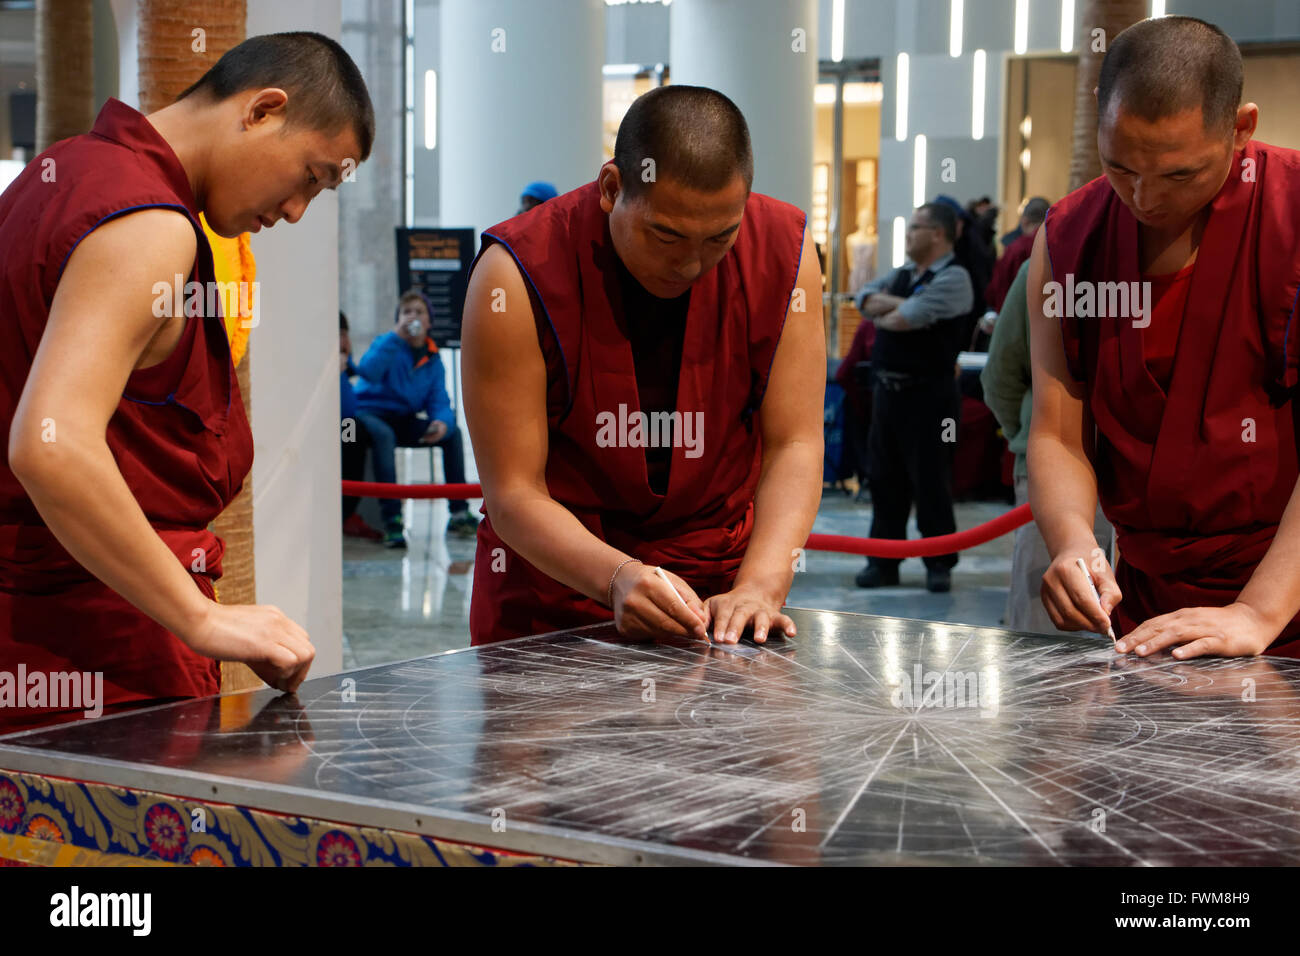 Moines tibétains du monastère de Drepung Loseling en Inde la création d'un mandala à Brookfield Place dans Battery Park City, Manhattan. Banque D'Images